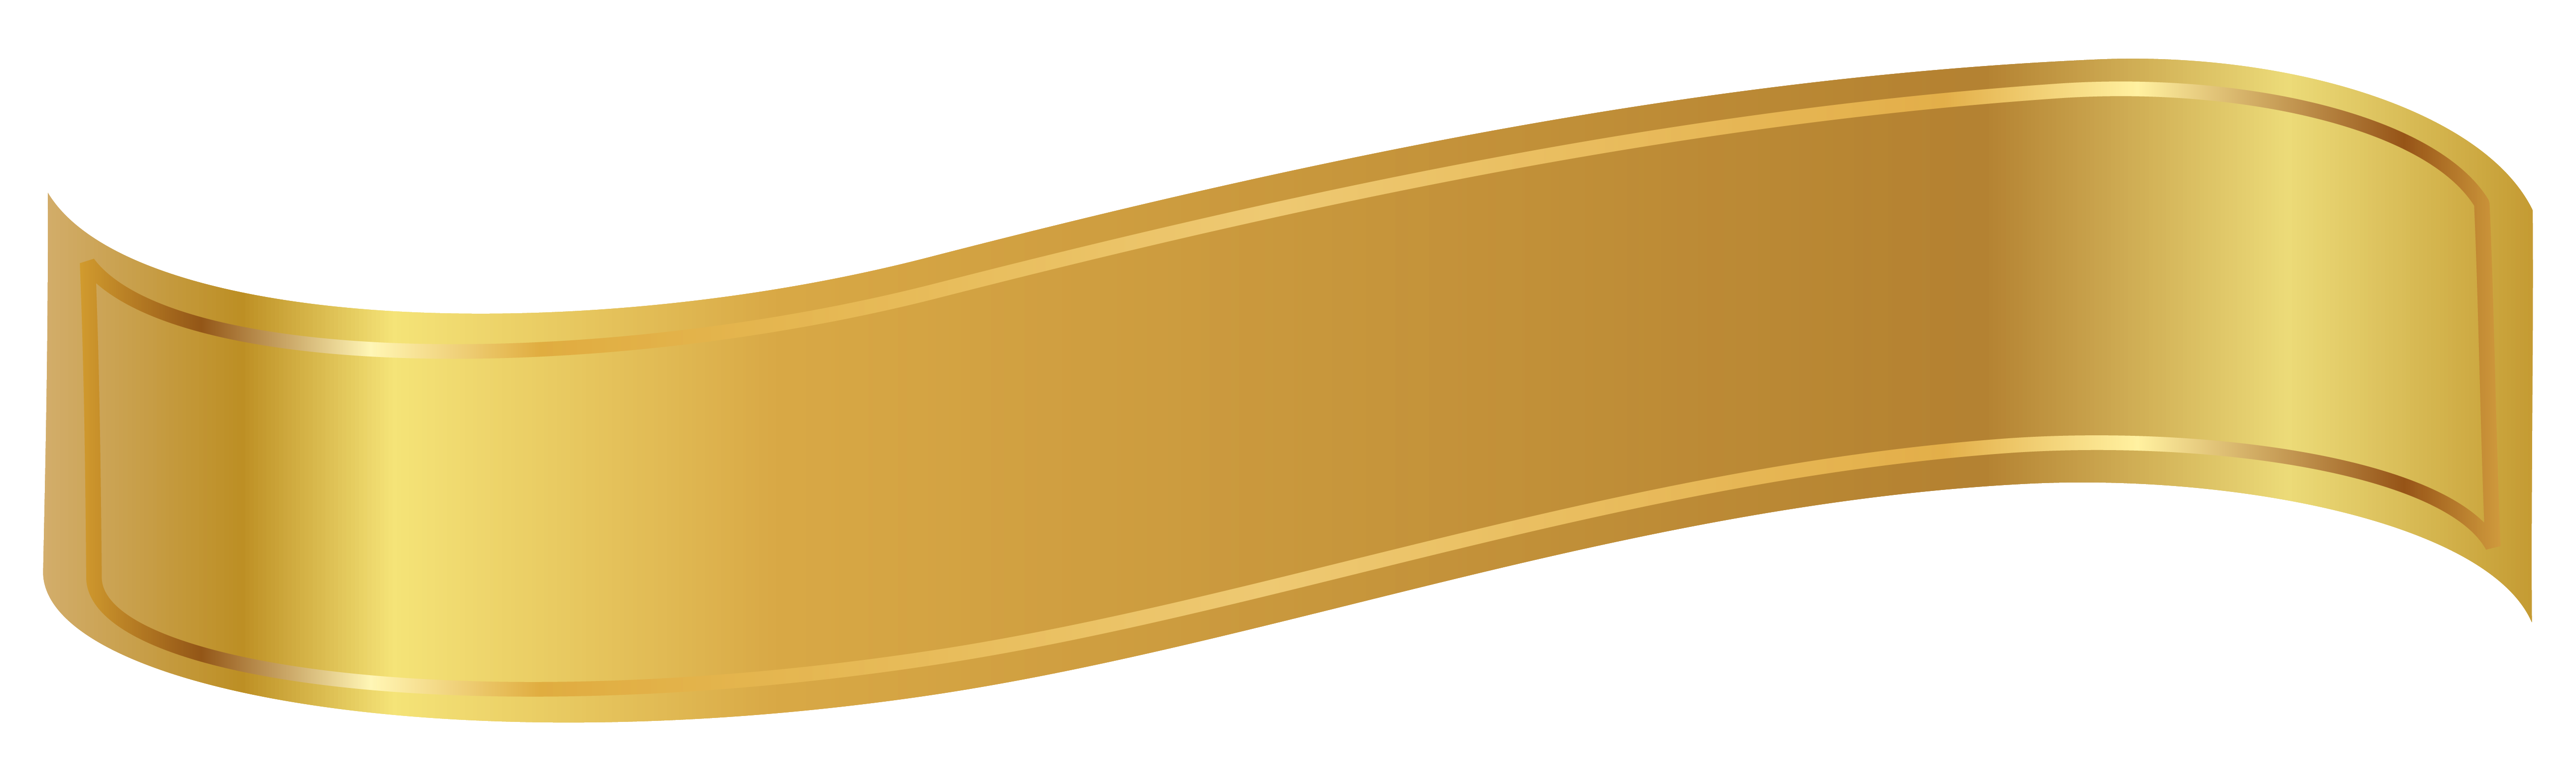 Gold Ribbon PNG Image